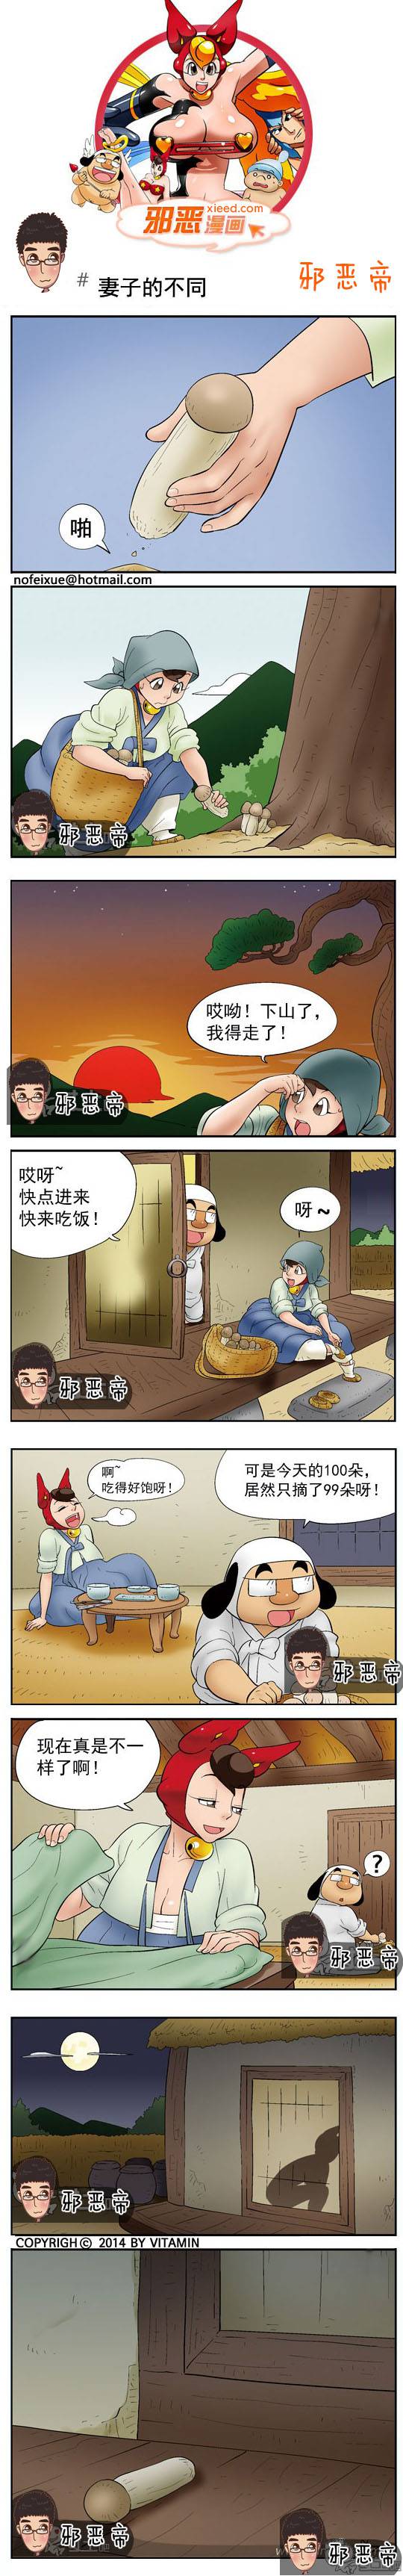 邪恶漫画爆笑囧图第339刊：内衣打猎